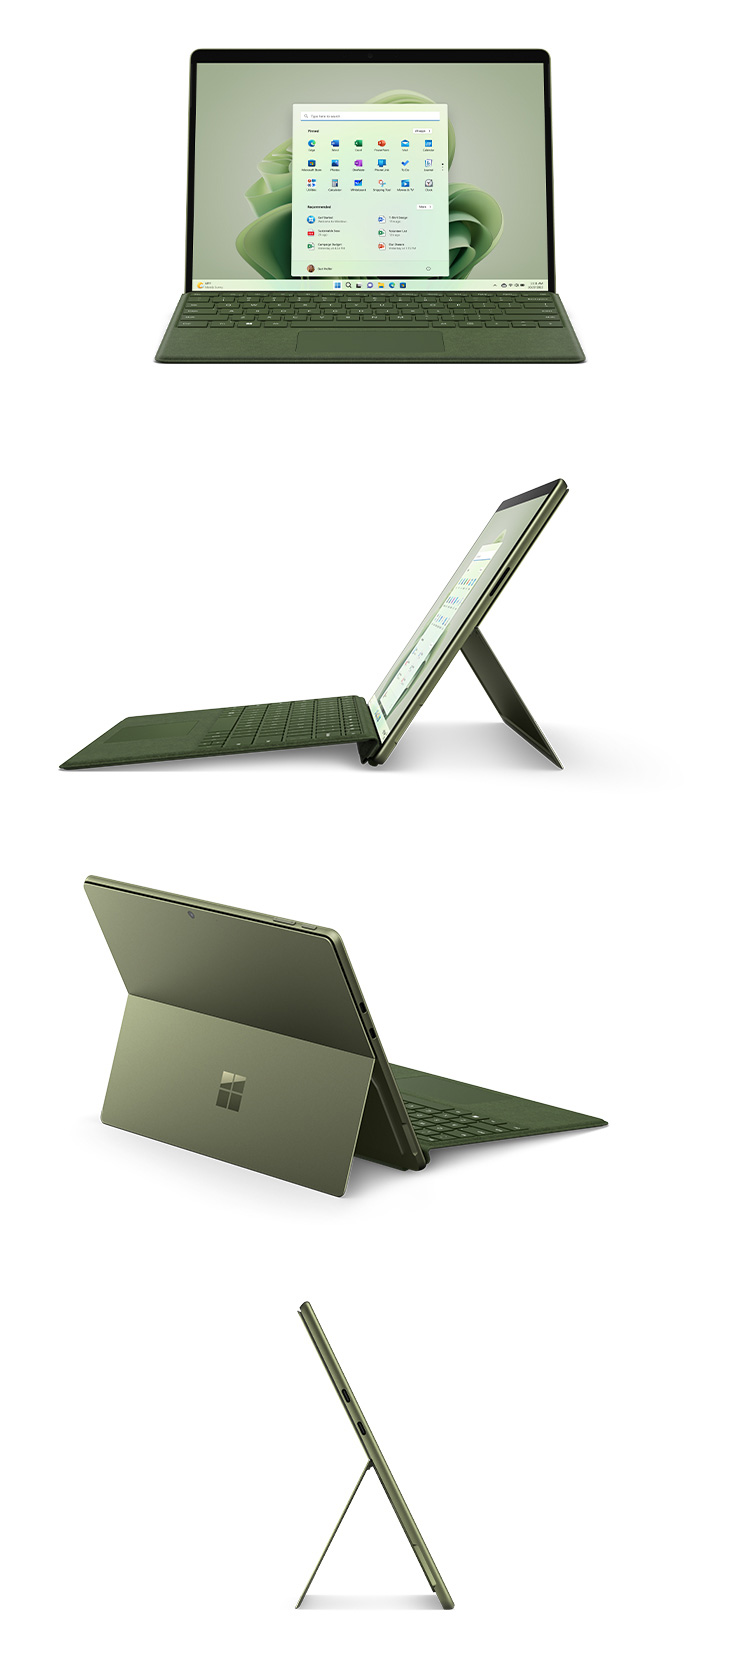 Surface Pro 9 couleur Forêt : vue de face avec un clavier Type Cover, vue du côté gauche avec un clavier Type Cover, vue de dos avec le pied multiposition intégré déployé et vue du côté droit.